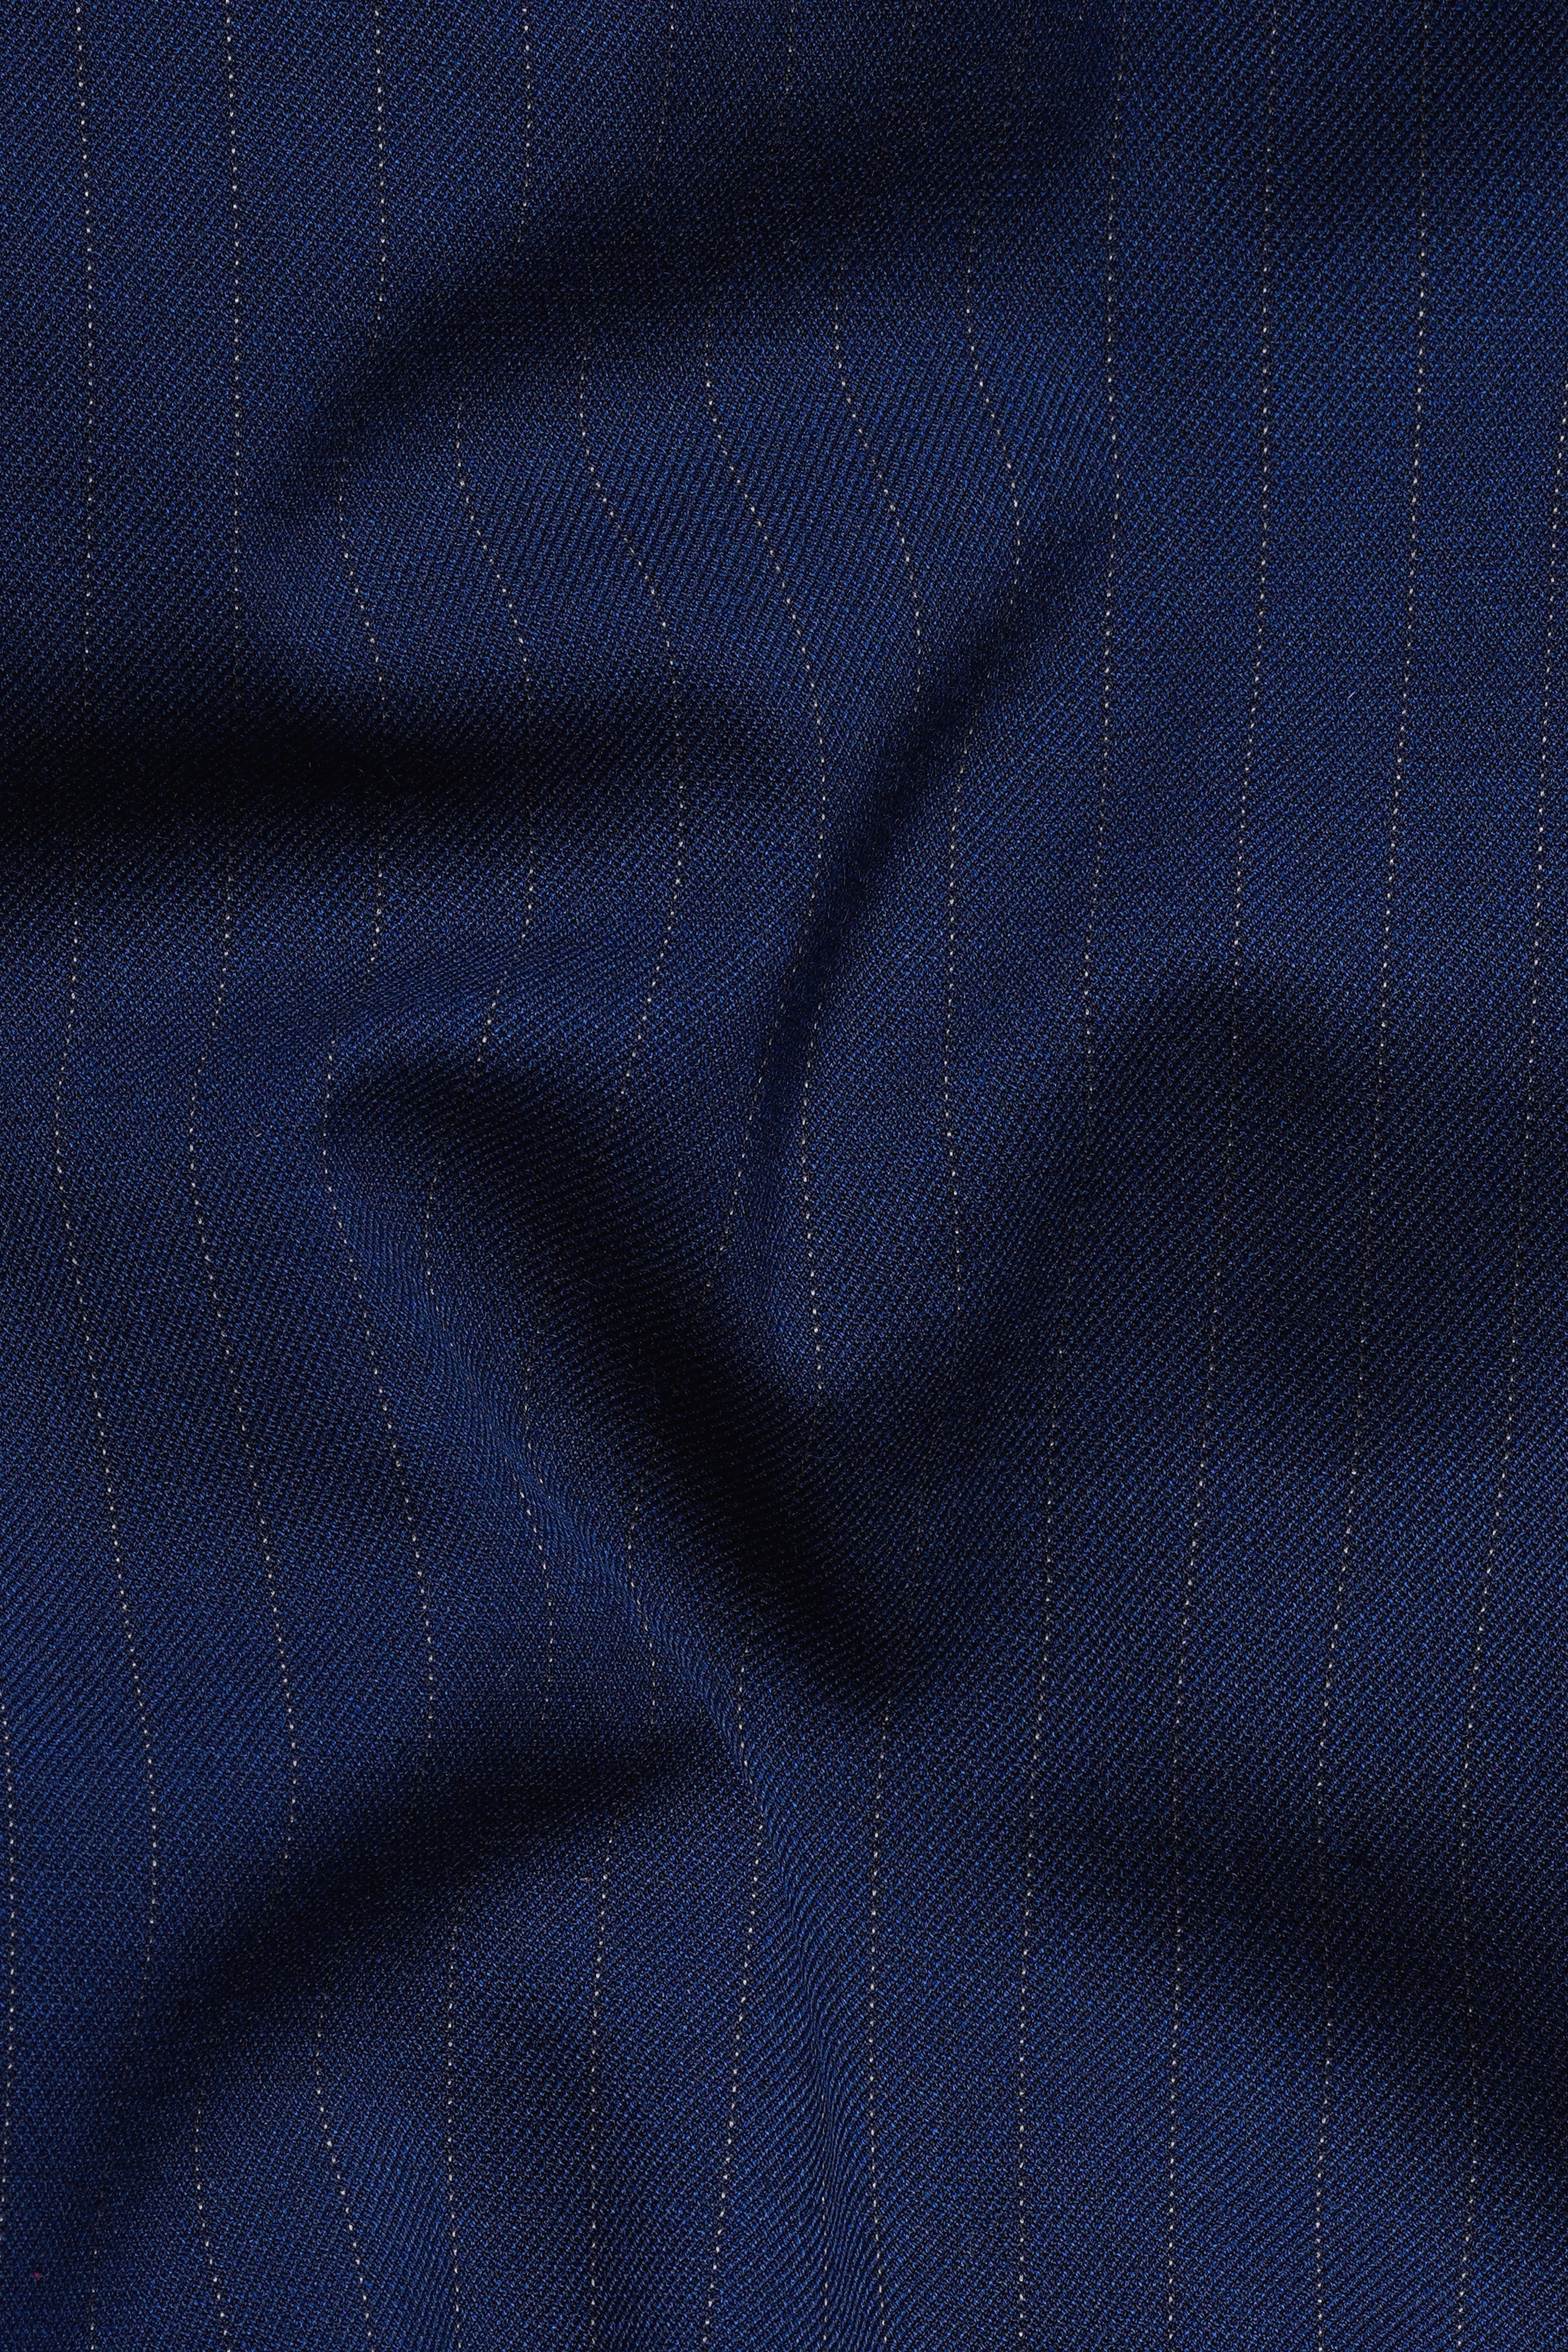 Ebony Clay Blue Striped Wool Rich Bandhgala Suit ST3088-BG-36, ST3088-BG-38, ST3088-BG-40, ST3088-BG-42, ST3088-BG-44, ST3088-BG-46, ST3088-BG-48, ST3088-BG-50, ST3088-BG-52, ST3088-BG-54, ST3088-BG-56, ST3088-BG-58, ST3088-BG-60